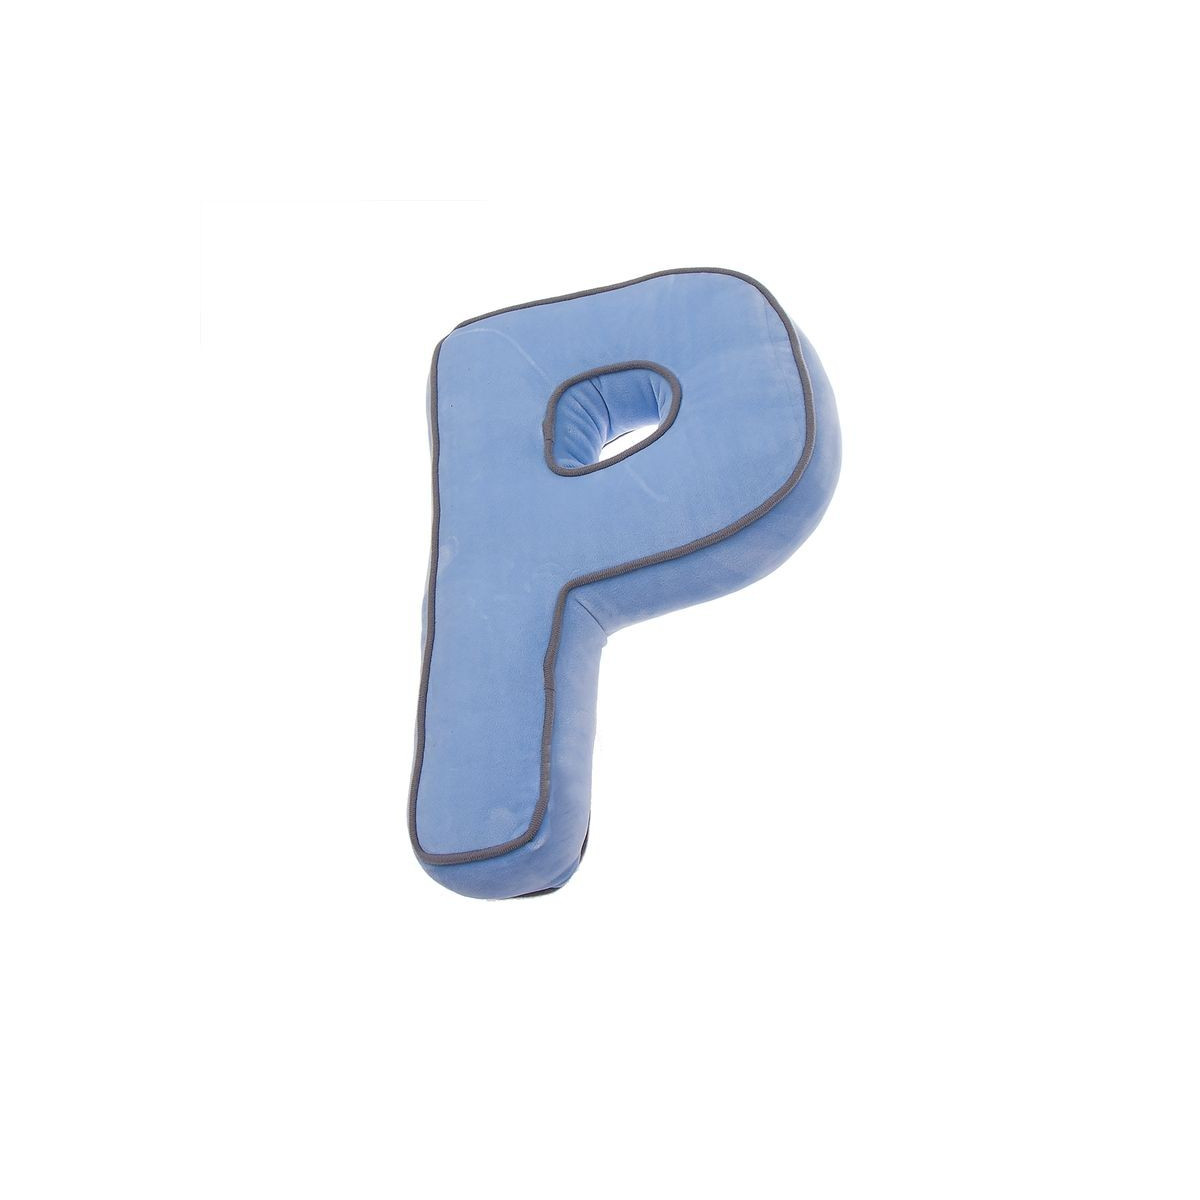 Cojin forma letra p azul